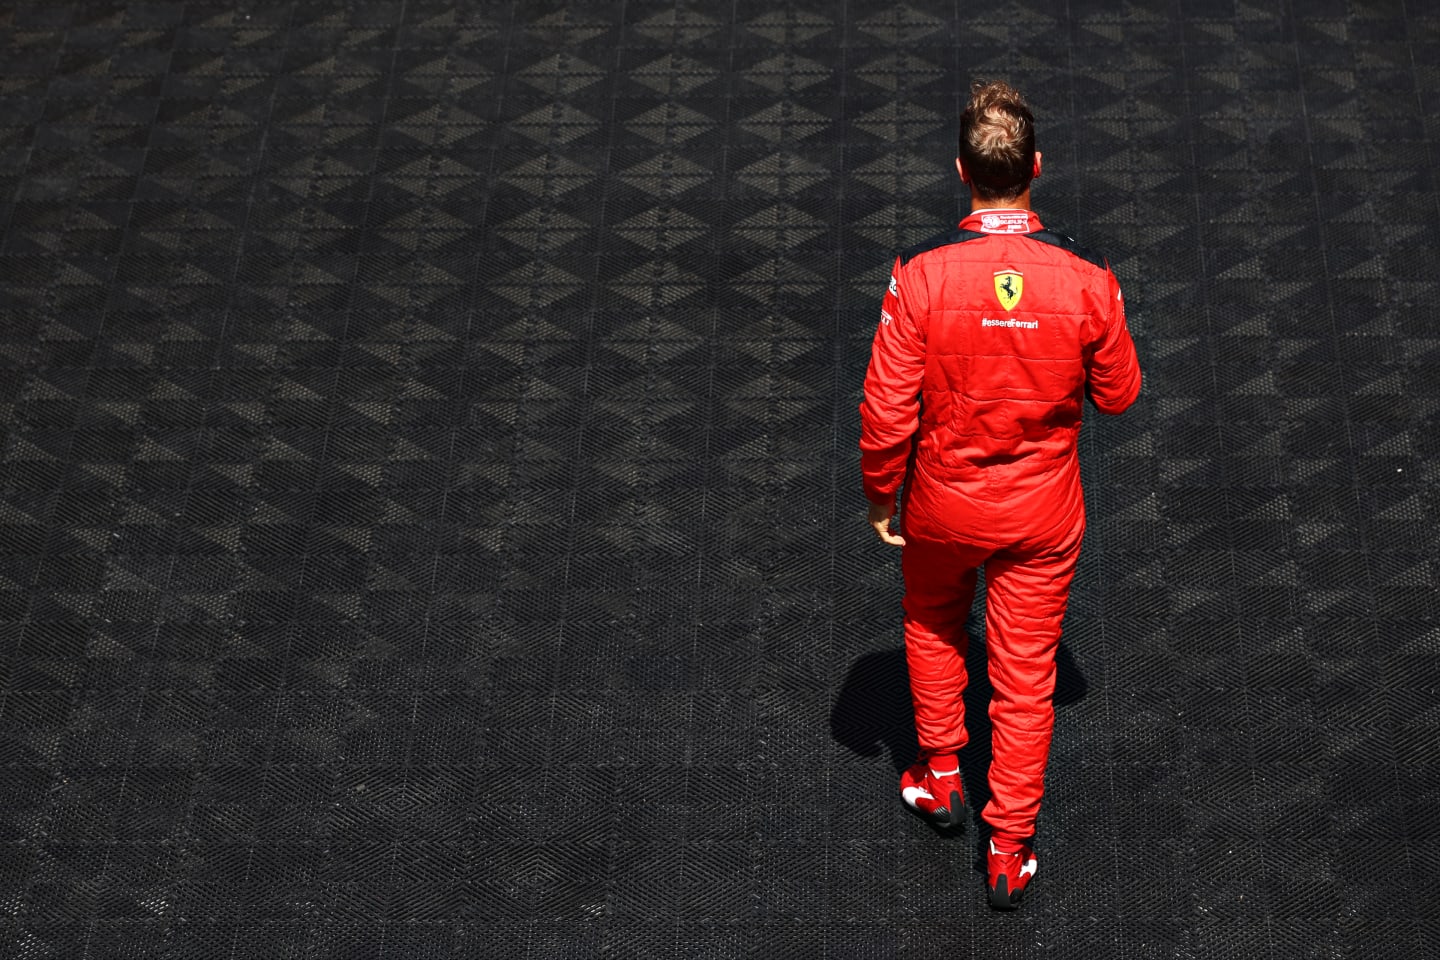 BARCELONA, SPAIN - AUGUST 16: Sebastian Vettel of Germany and Ferrari walks to the grid before the